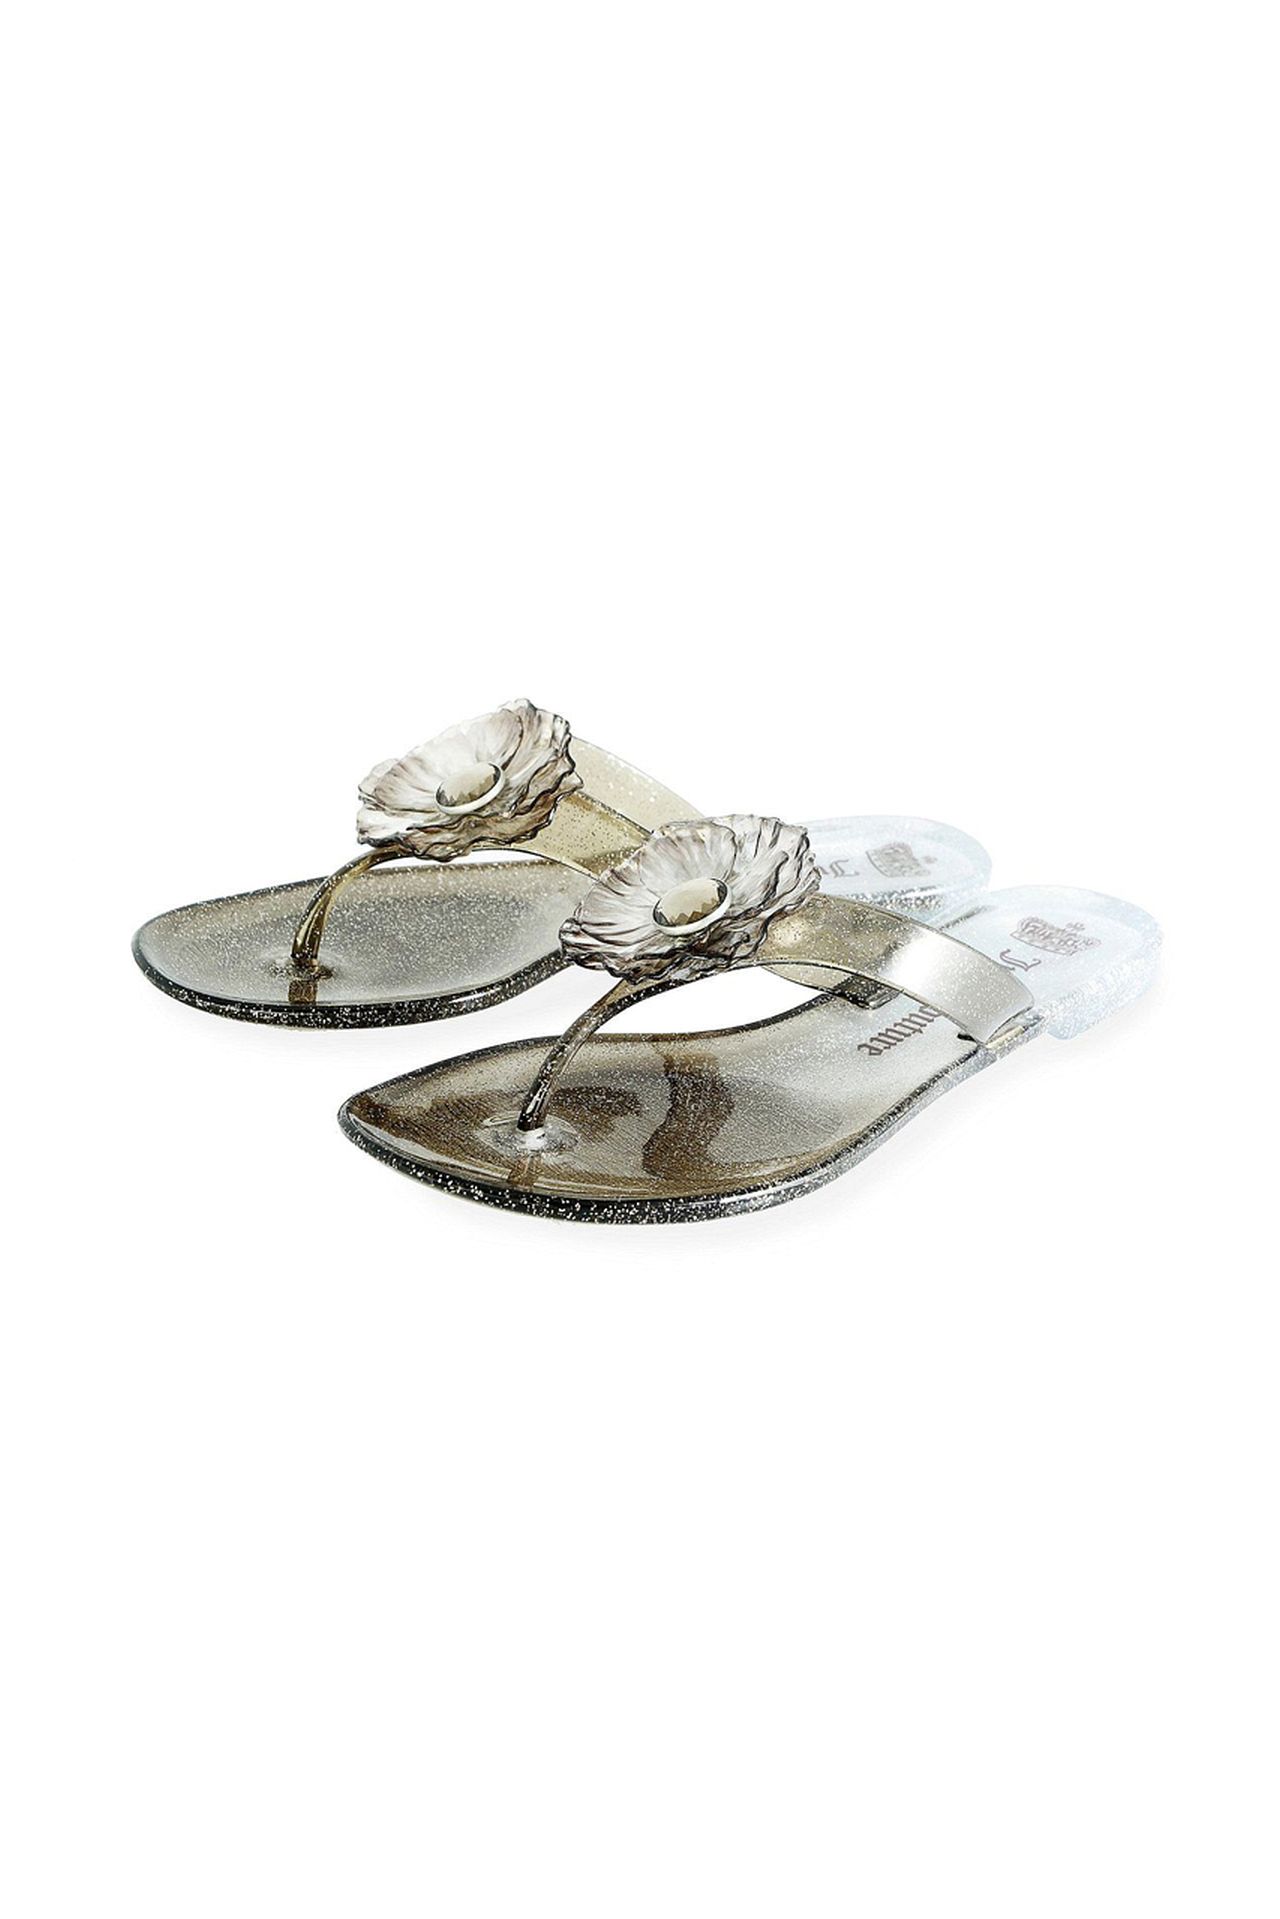 Обувь женская Шлепки JUICY COUTURE (J161543/11.1). Купить за 3250 руб.